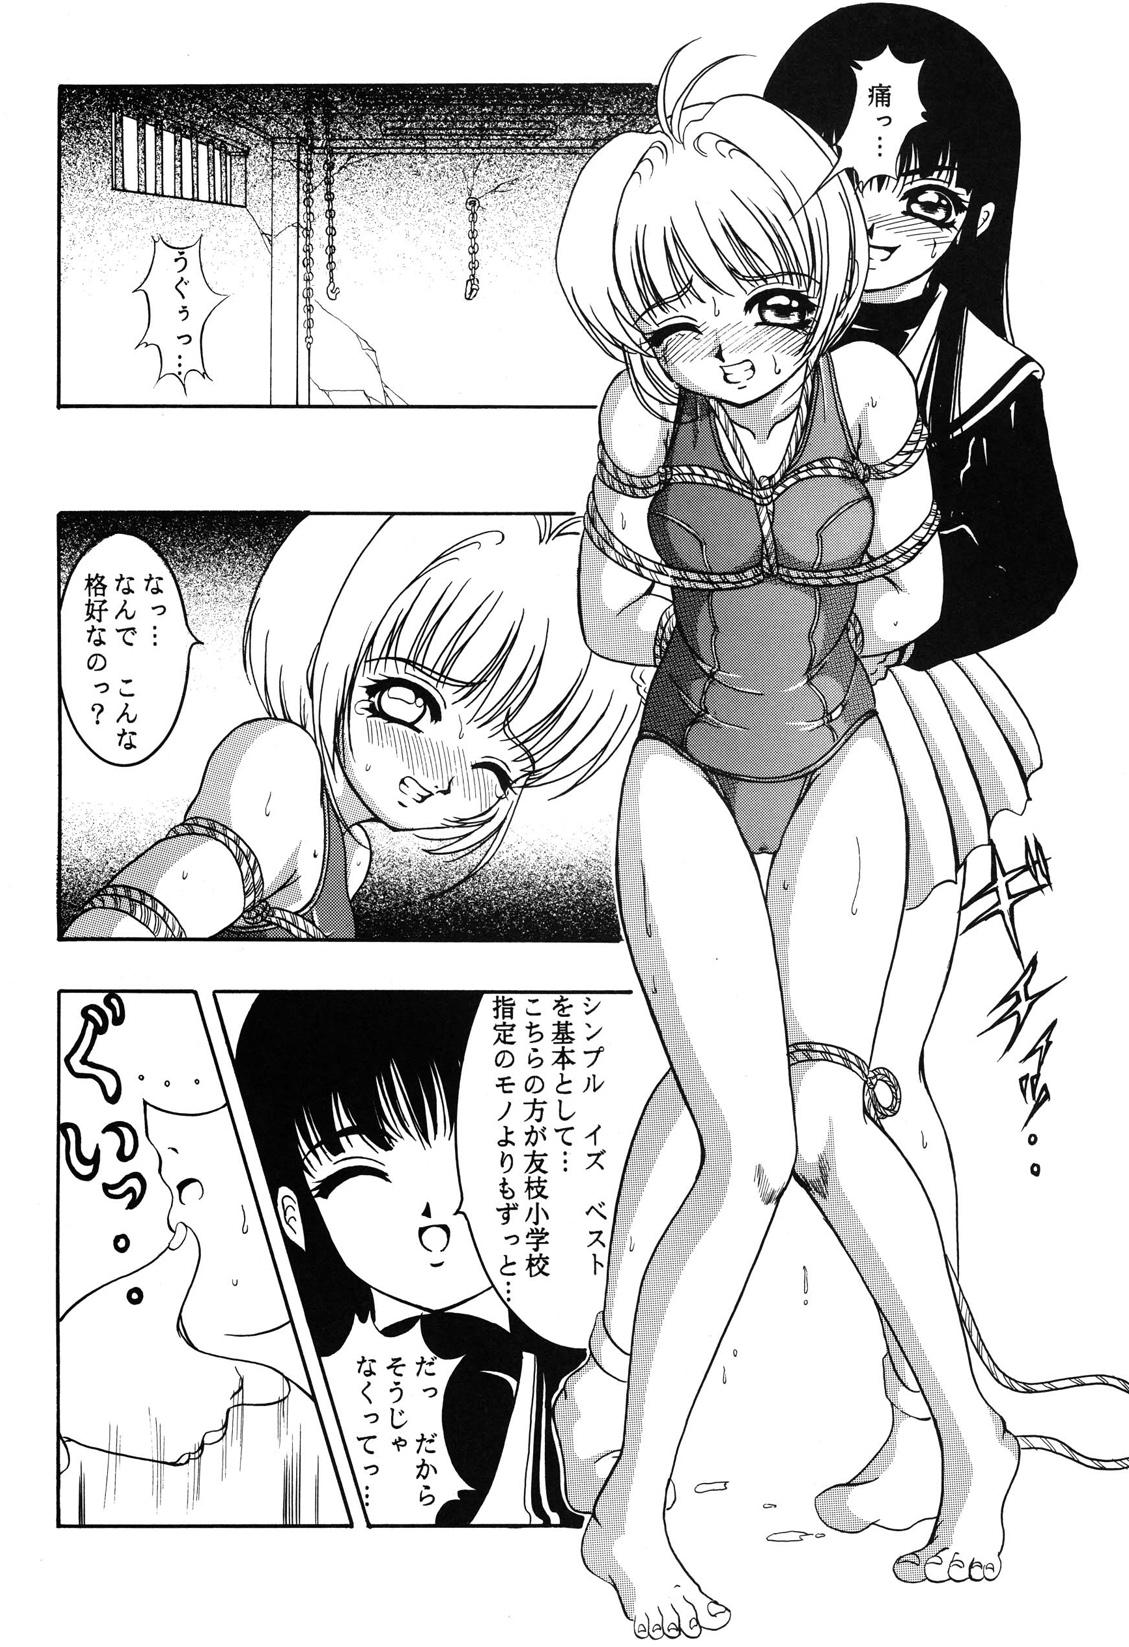 Polish Hana ni Arashi no Rei hemo Aruzo - Cardcaptor sakura Amatur Porn - Page 7